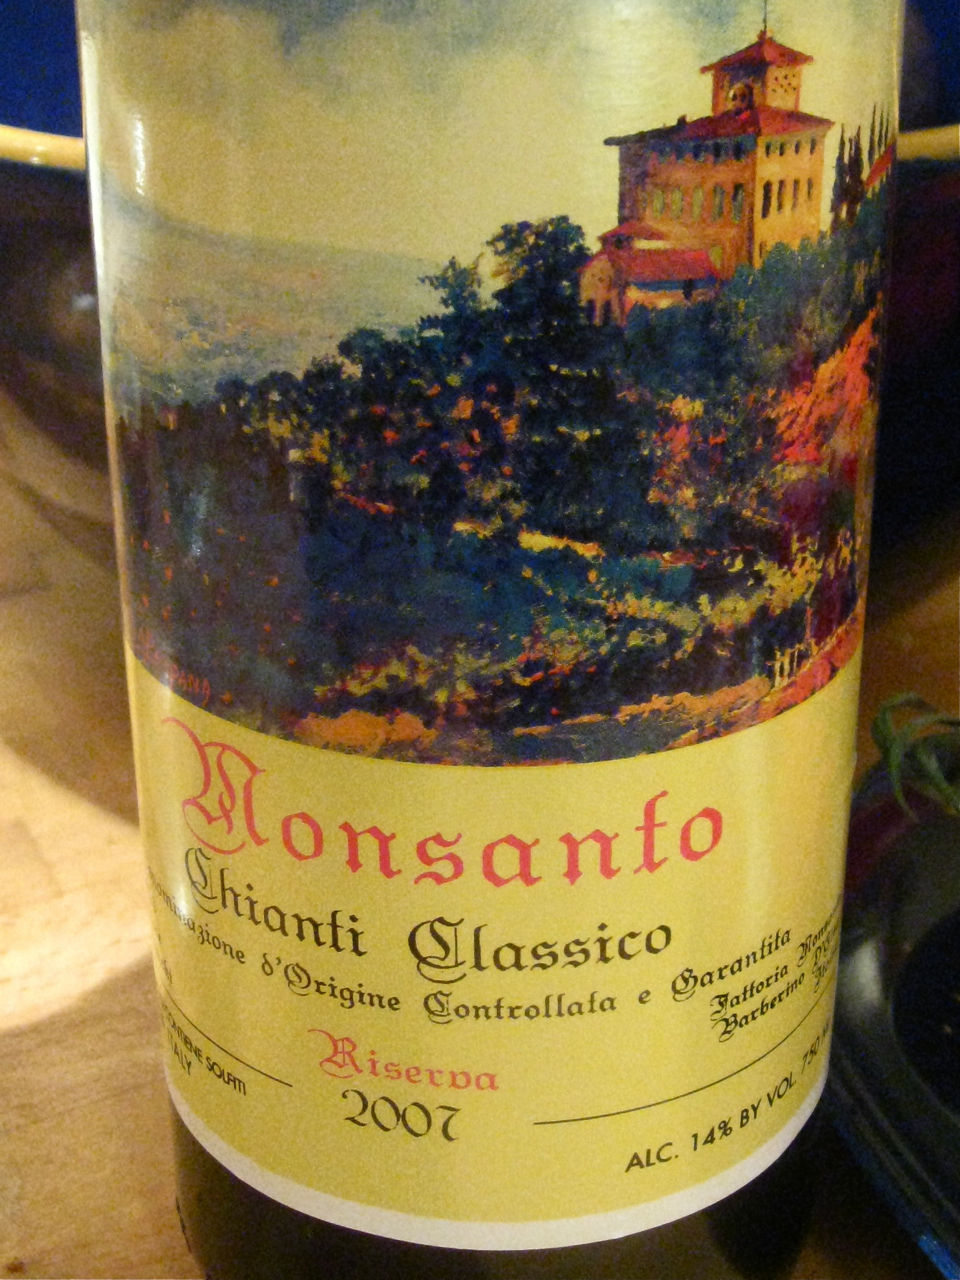 2019 Monsanto Chianti Classico Riserva - click image for full description